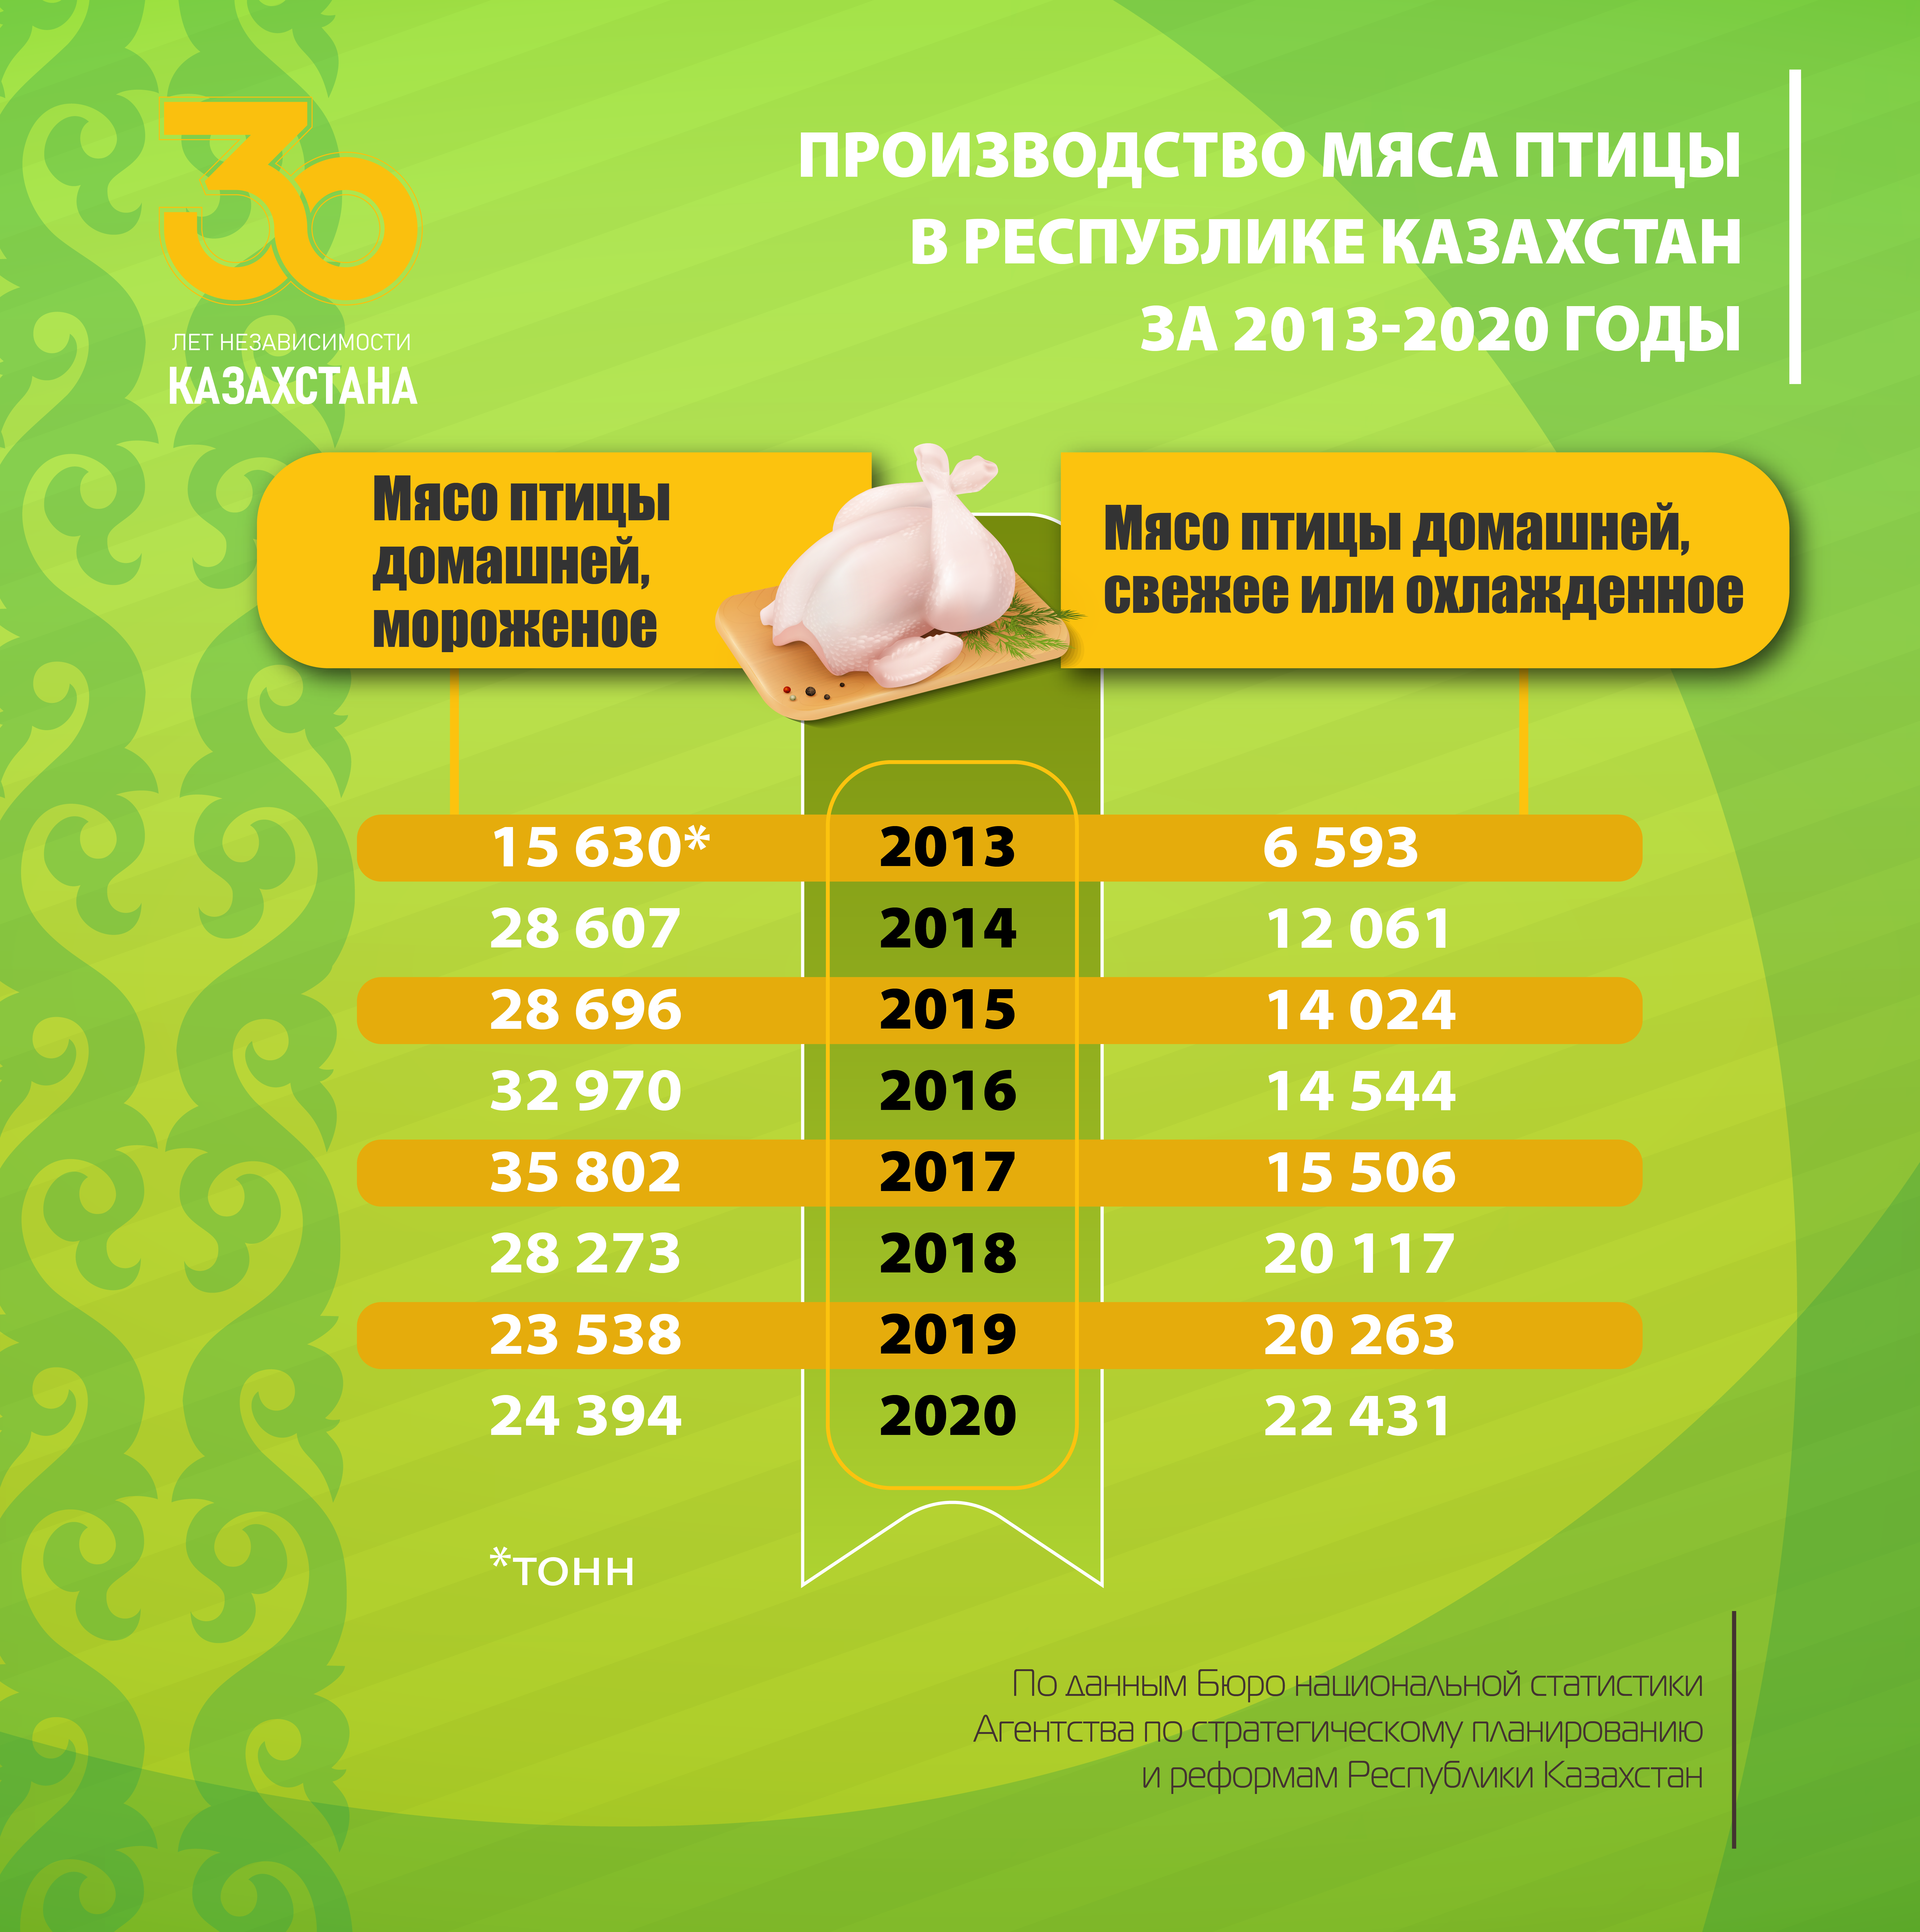 Производство мяса птицы в РК за 2013-2020 годы